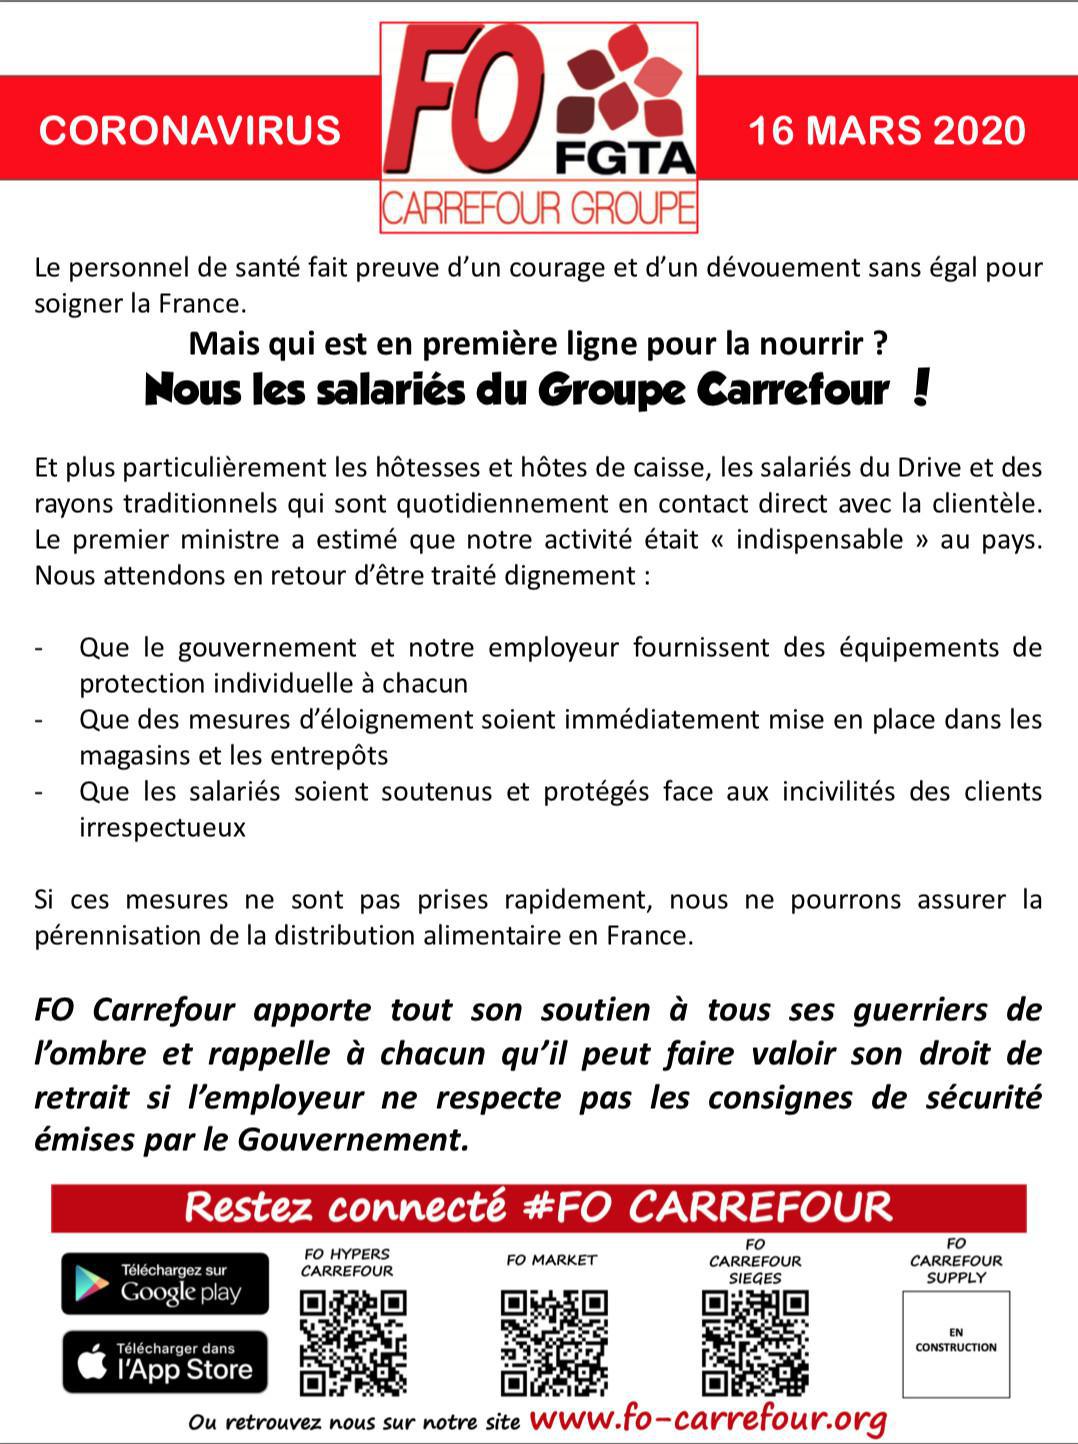 FO Carrefour soutient les salariés du Groupe